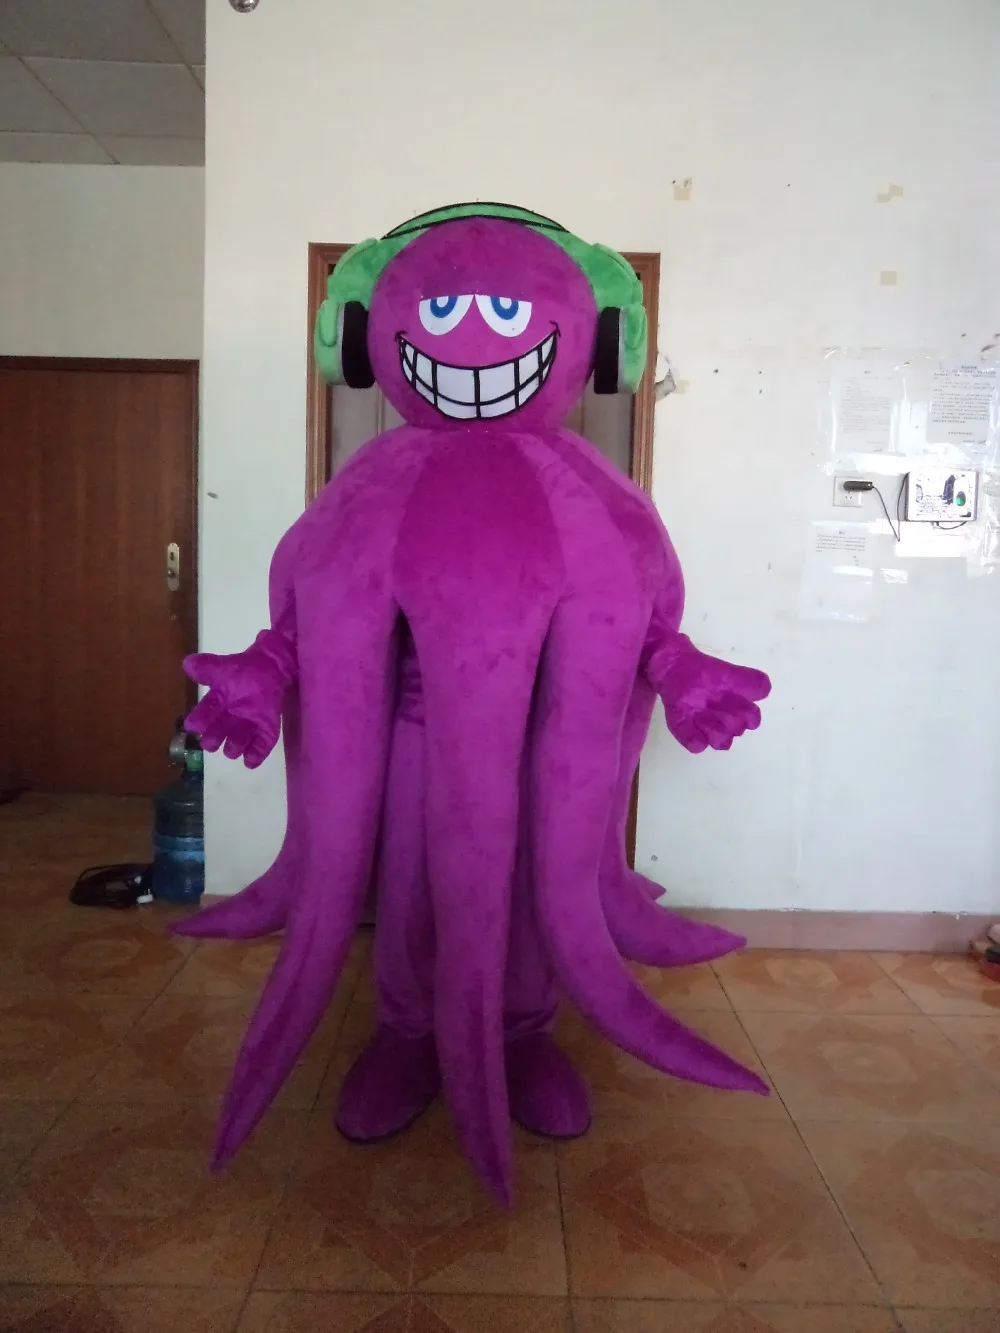 https://ae01.alicdn.com/kf/Hacebba3db5bf44279afef596afe174e8Q/Disfraz-de-Mascota-de-pulpo-p-rpura-para-adultos-traje-de-juego-de-Cosplay-publicidad-Carnaval.jpg